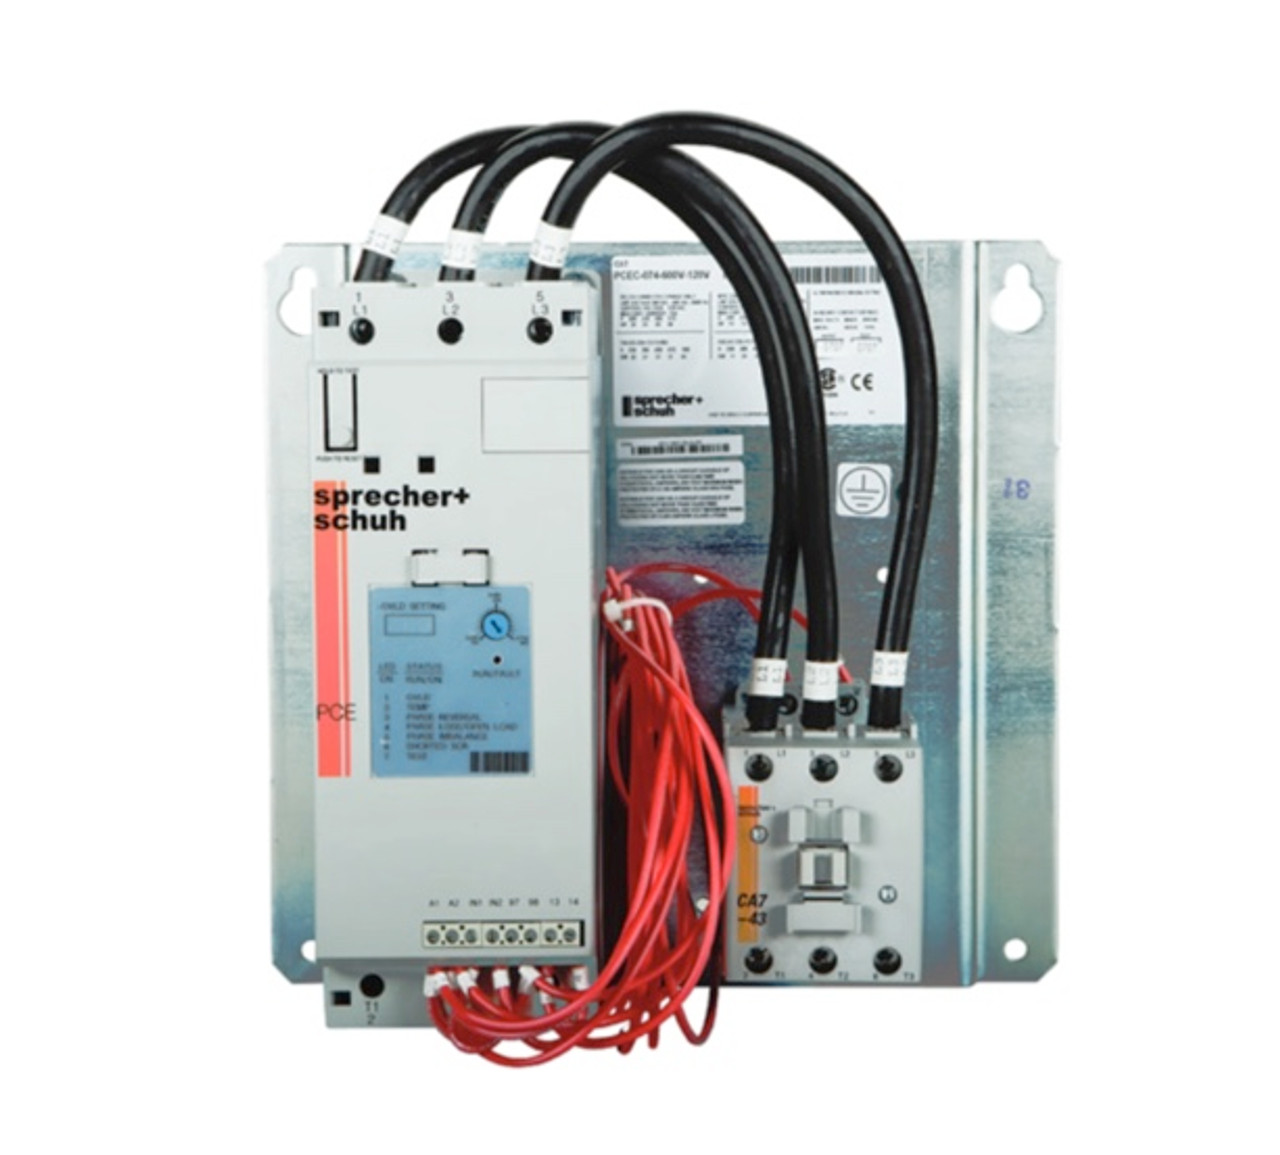 Sprecher & Schuh PCEC-147-600V-230V Hydraulic Elevator Softstarter